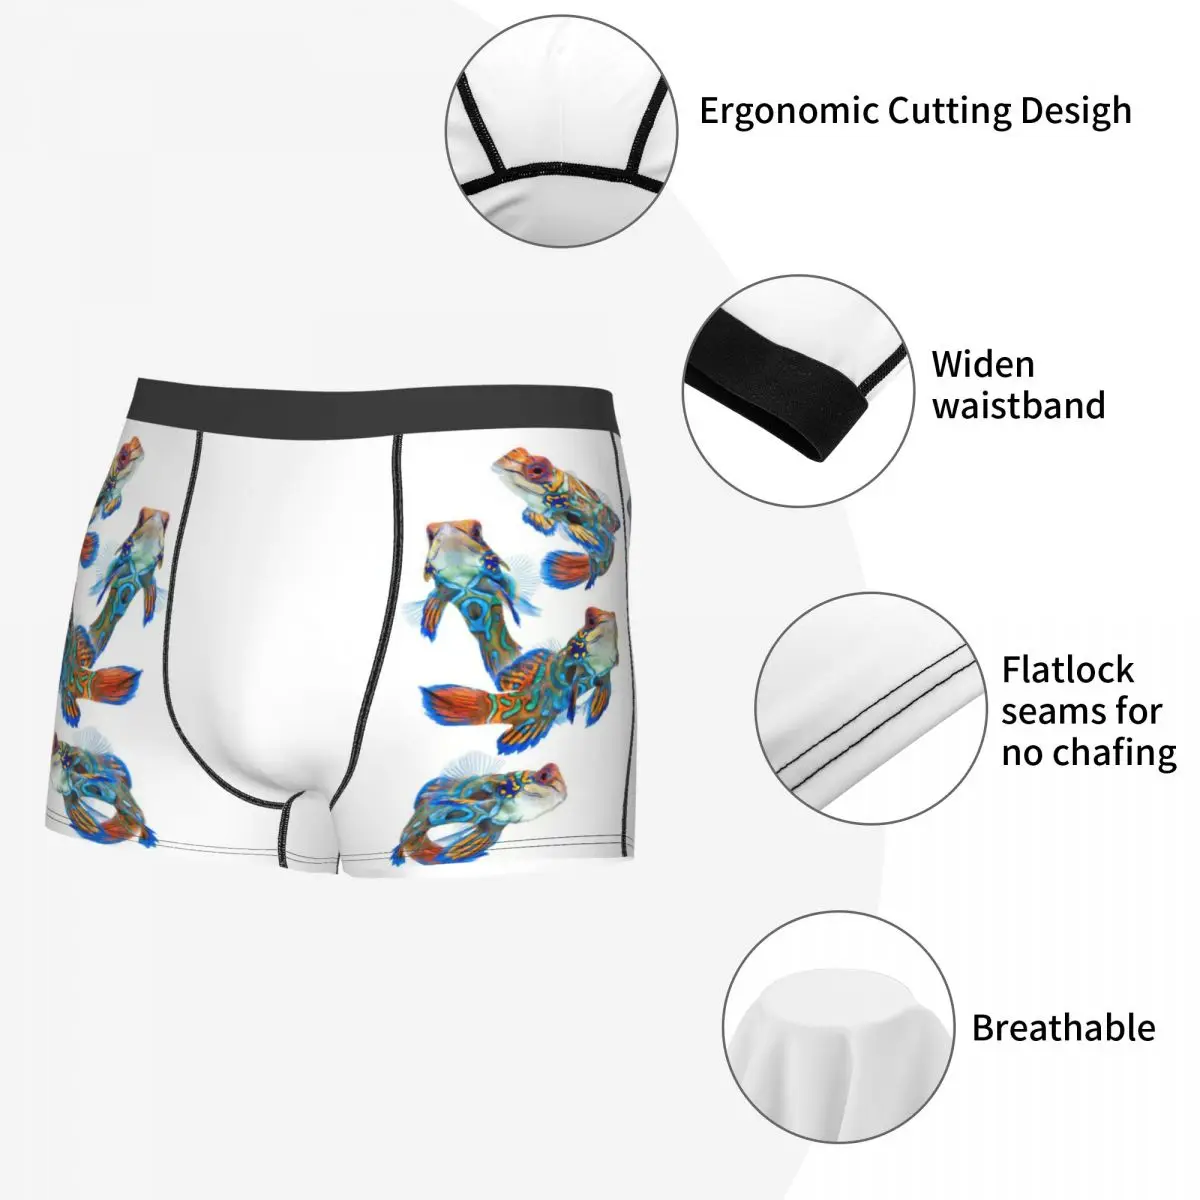 Celana Boxer pria berbagai warna motif ikan tropis, celana dalam motif 3D, hadiah ulang tahun Kualitas Terbaik sangat bersirkulasi